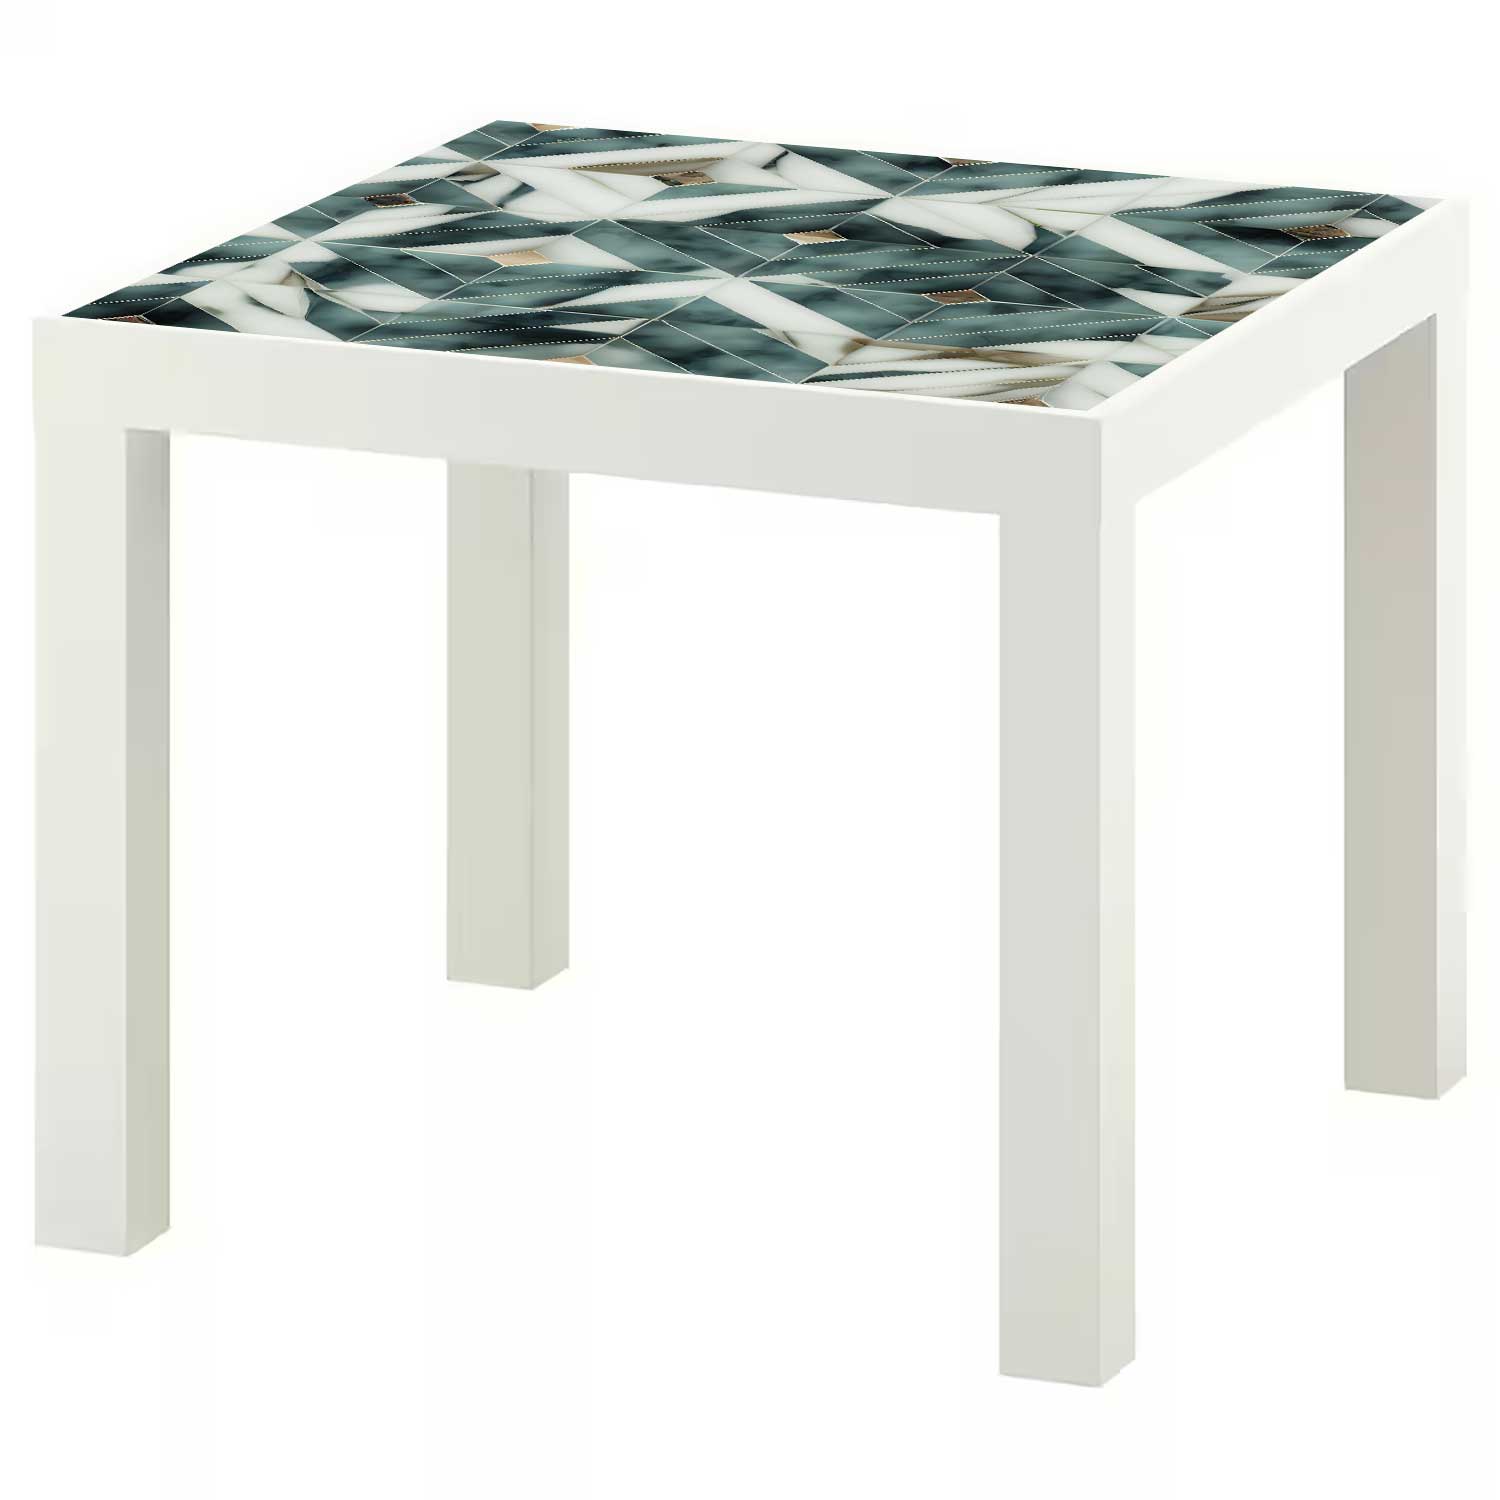 Möbelfolie für IKEA Lack Tisch 55x55 cm 'Marmor Fliesen'